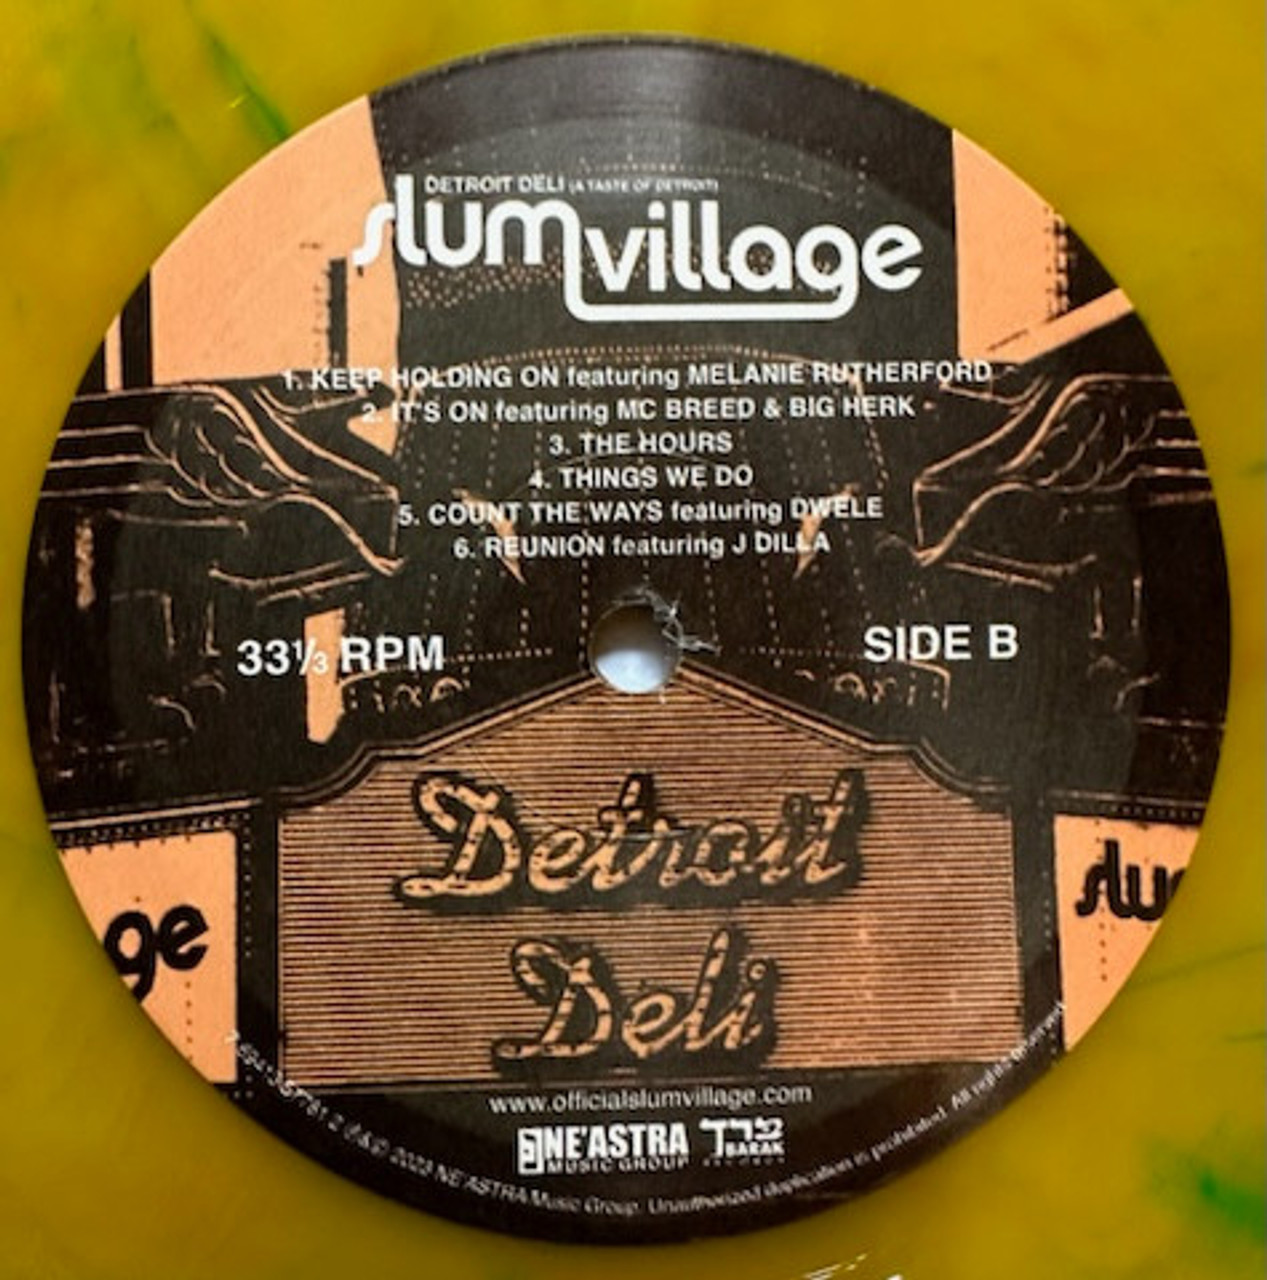 Detroit Deli (A Taste Of Detroit) - Slum Village (#769413577812)